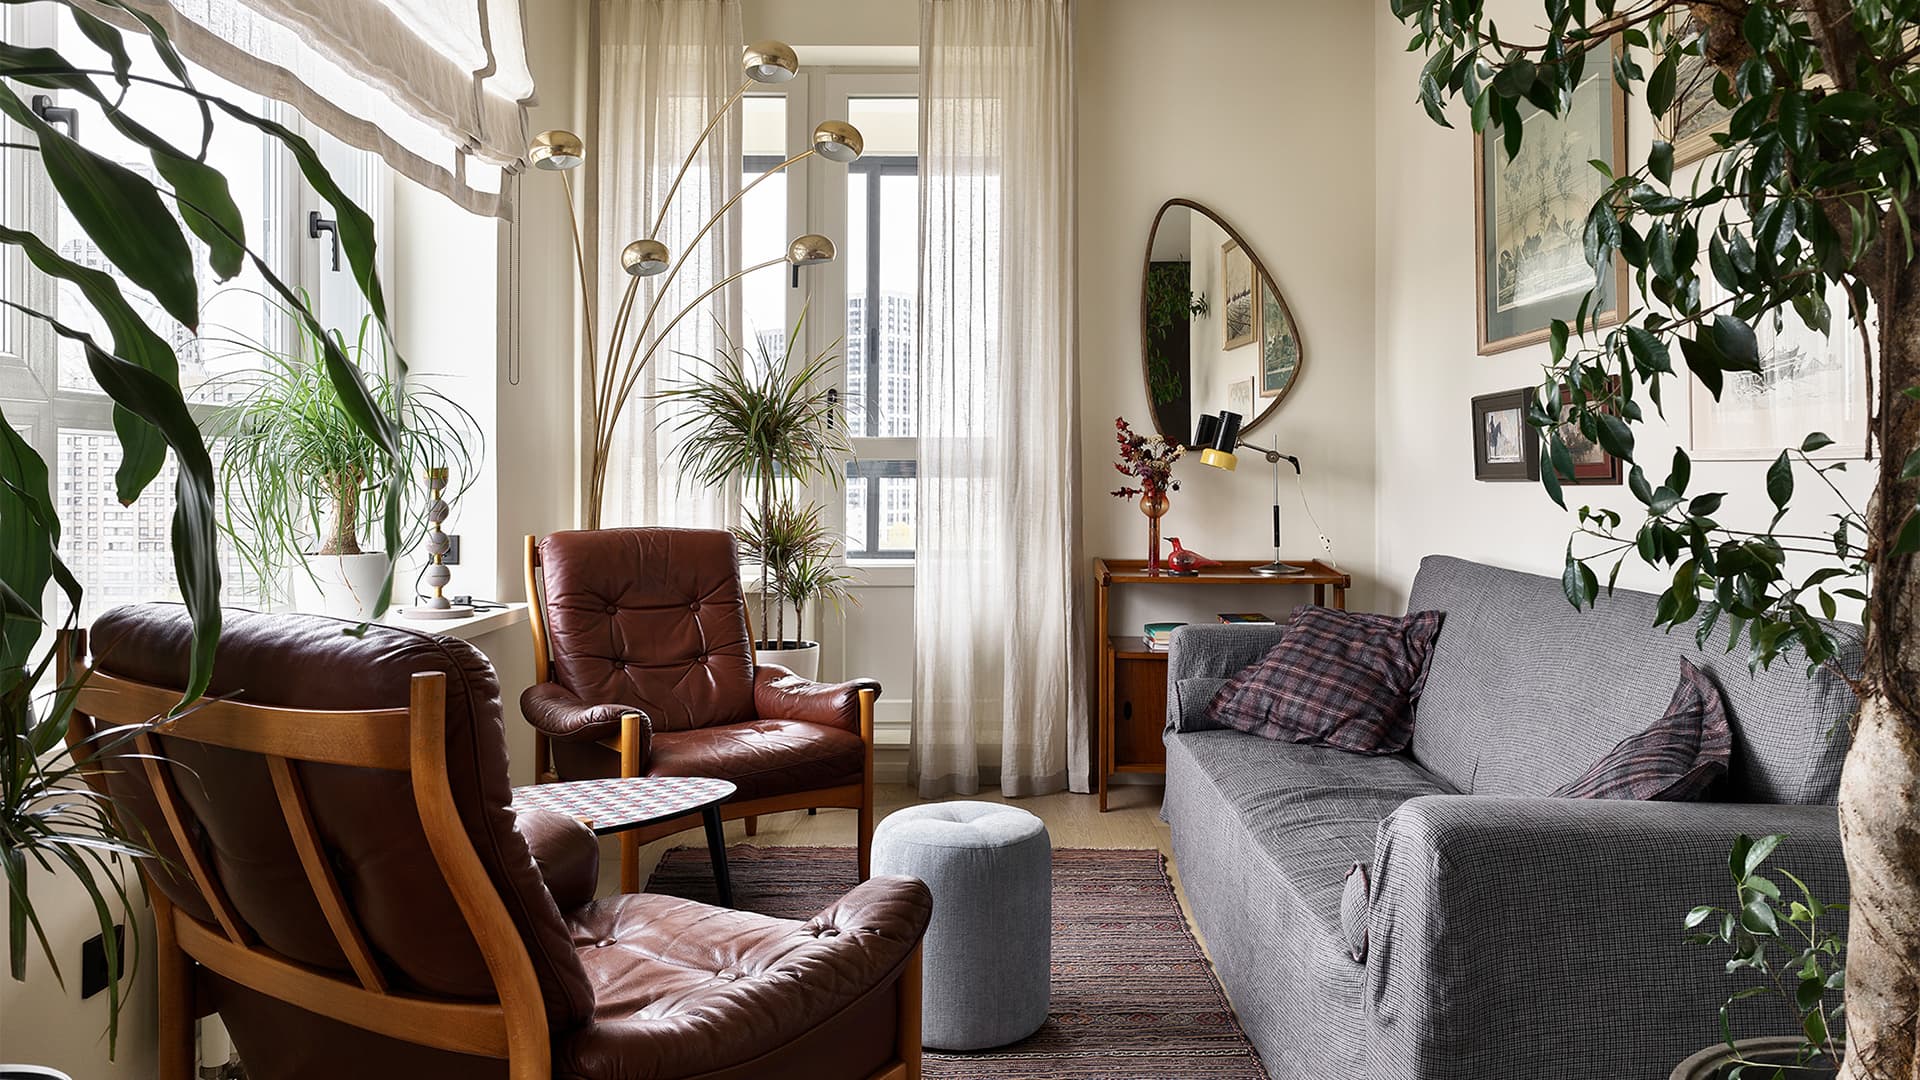 Винтажная мебель, текстиль и живые растения в интерьере квартиры для молодого человека — проект Юлии Голавской